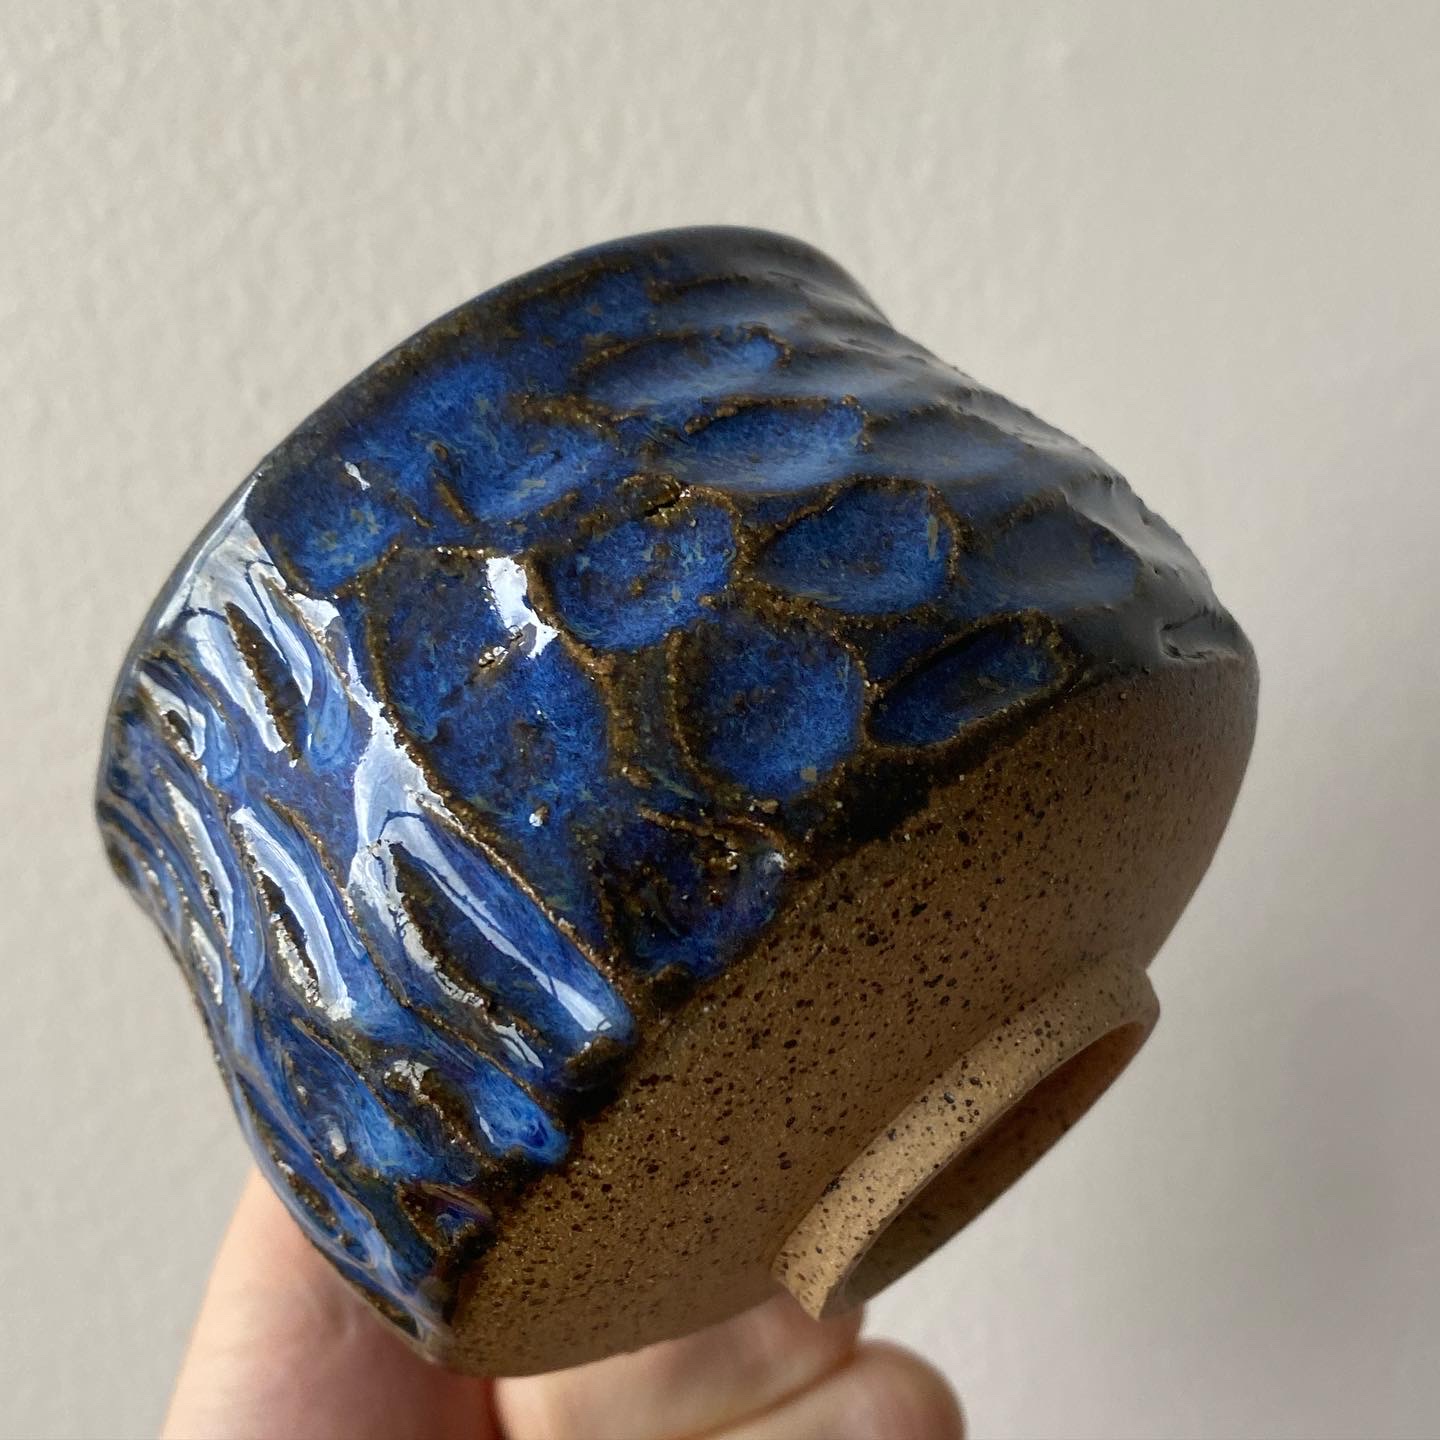 Altered mug in blue glaze